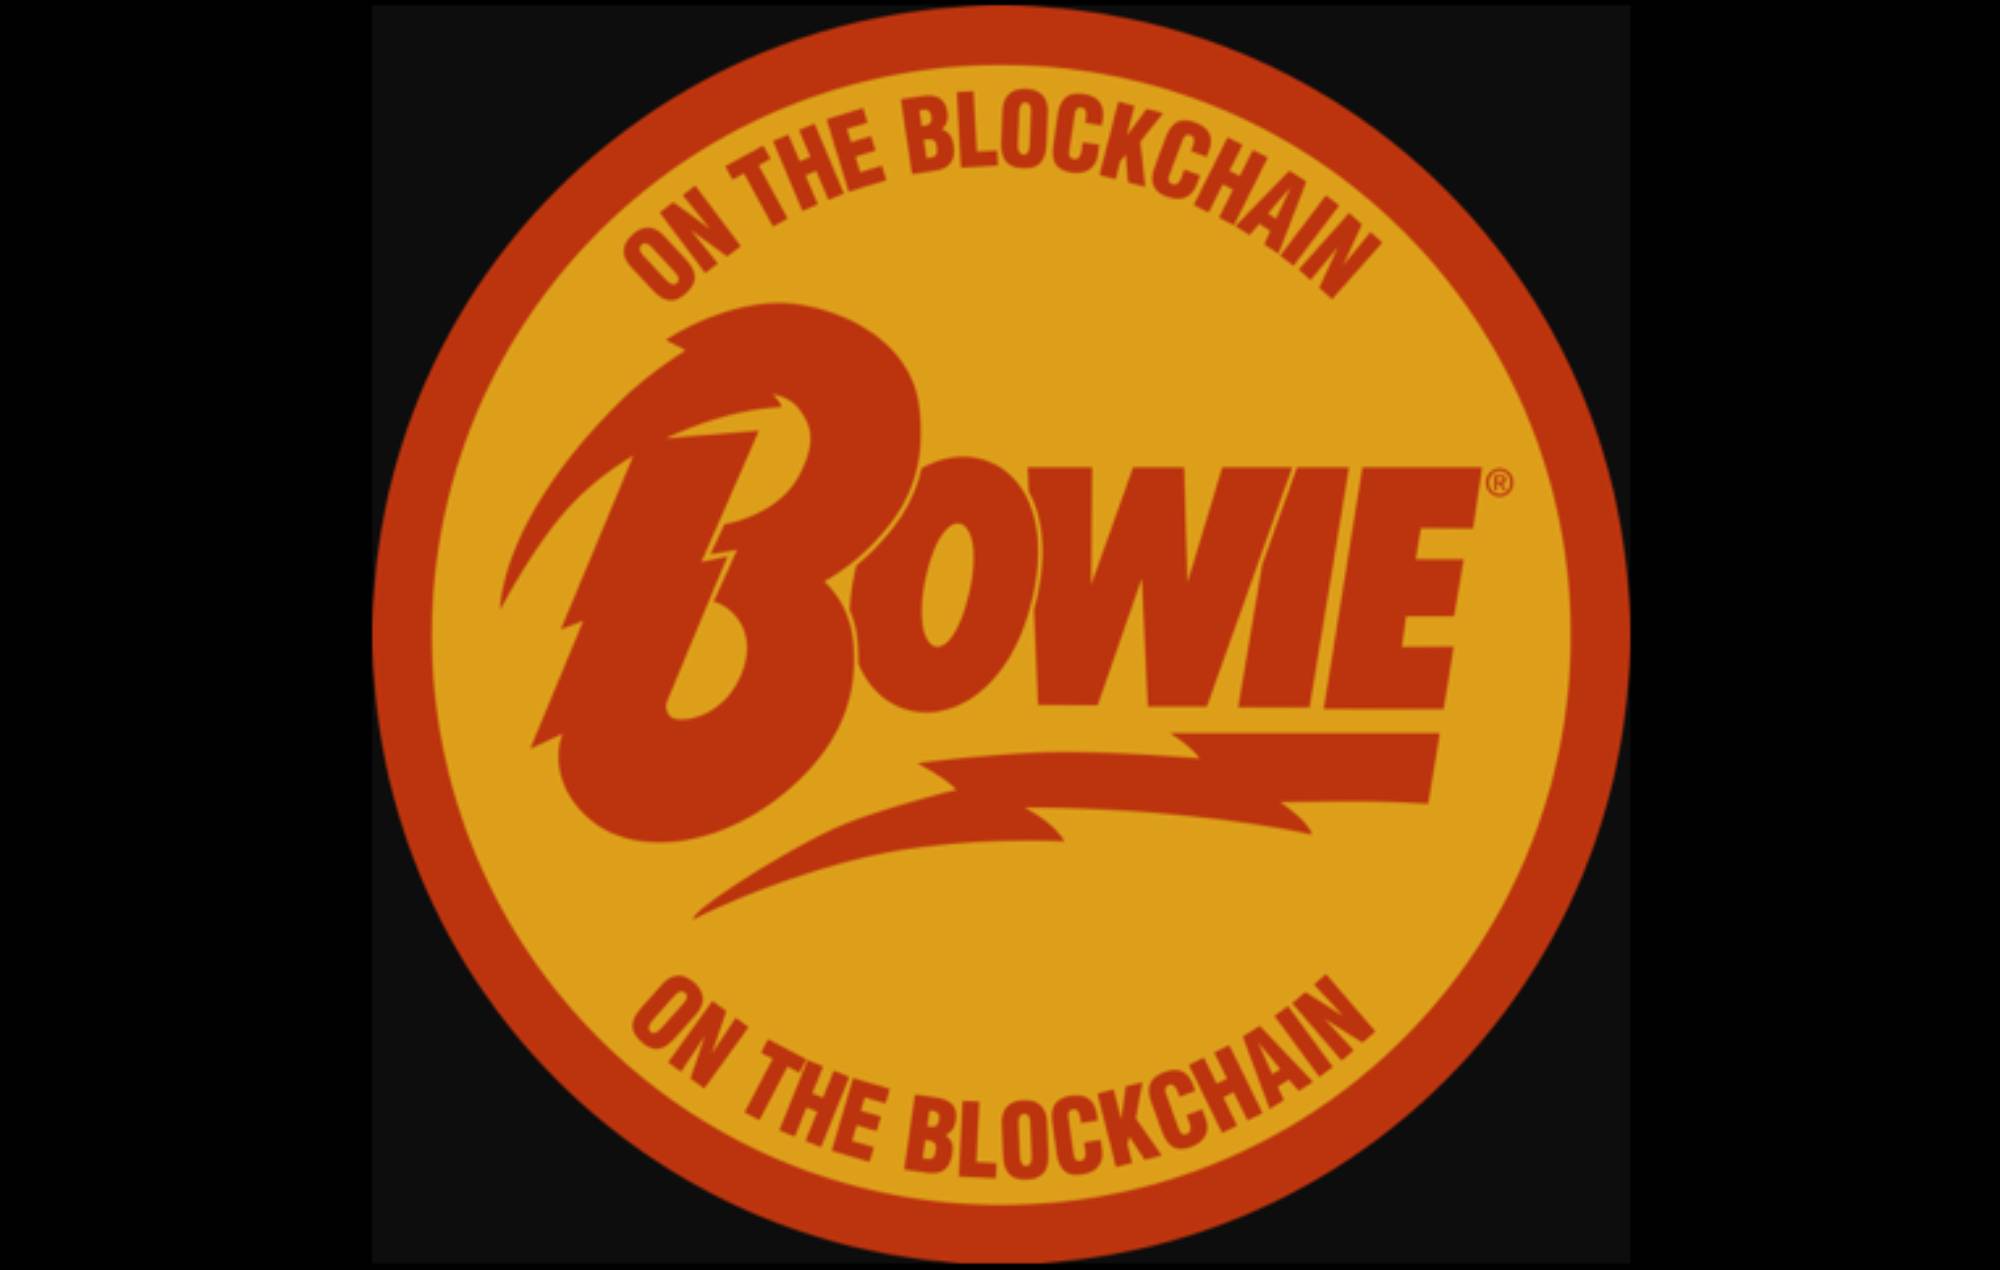 El proyecto de arte digital de David Bowie, 'Bowie On The Blockchain', se lanzará la próxima semana